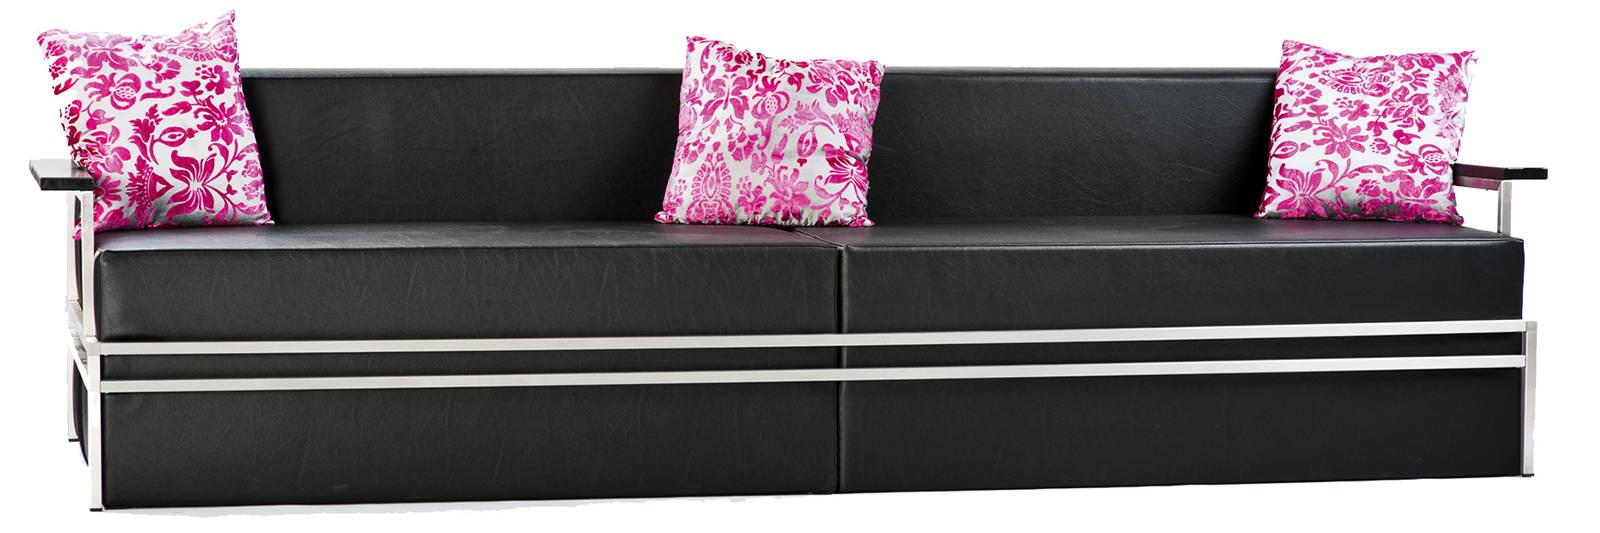 Design Sofa mieten für Event schwarz mit Dekokissen